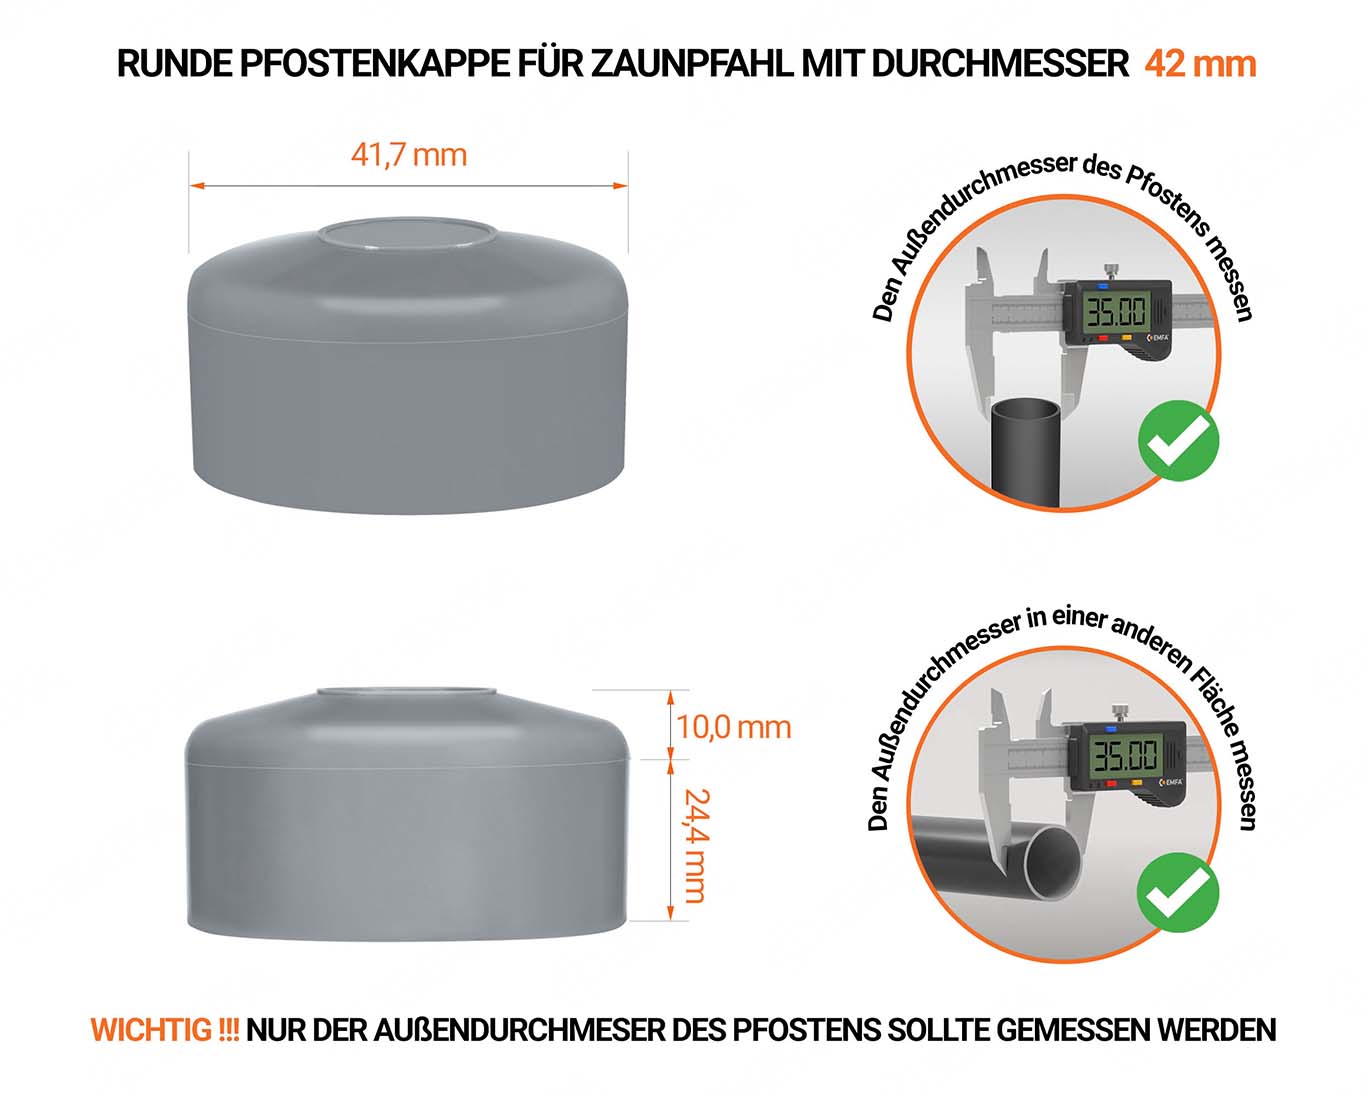 Graue Pfostenkappen rund für Pfostendurchmesser  42 mm mit technischen Abmessungen und Anleitung für korrekte Messung